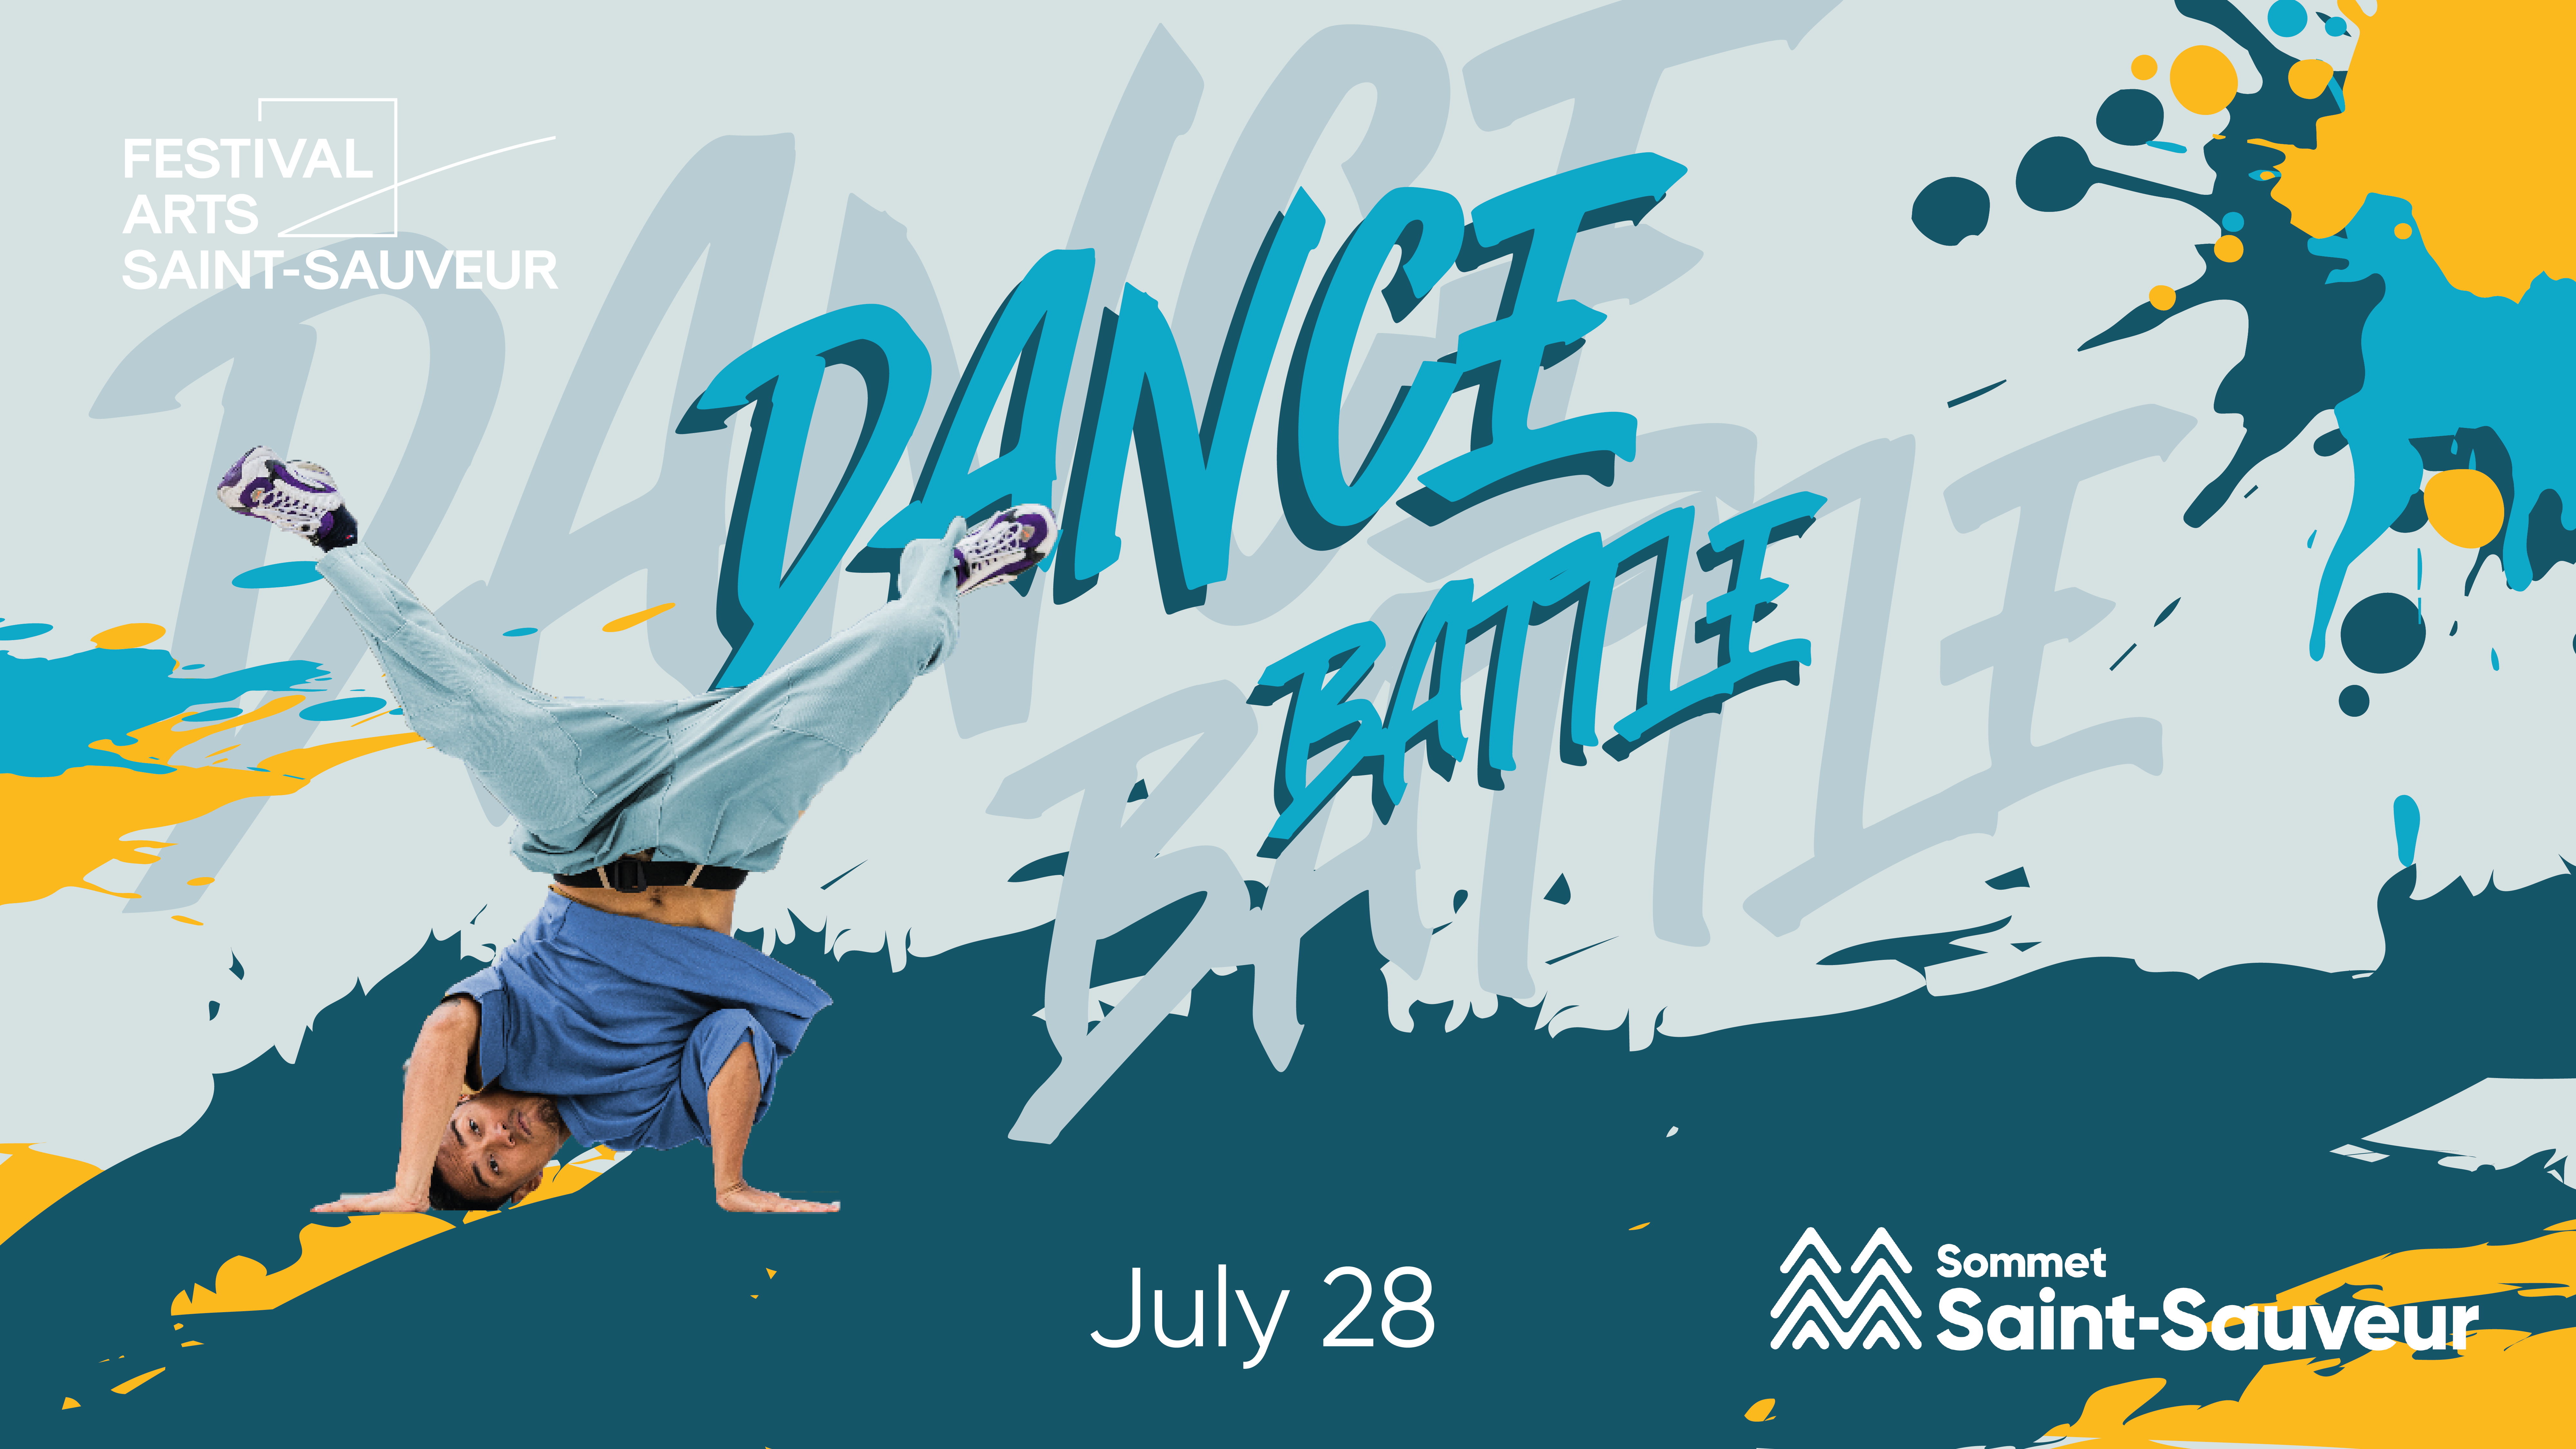 Saint-Sauveur art festival - Dance battle